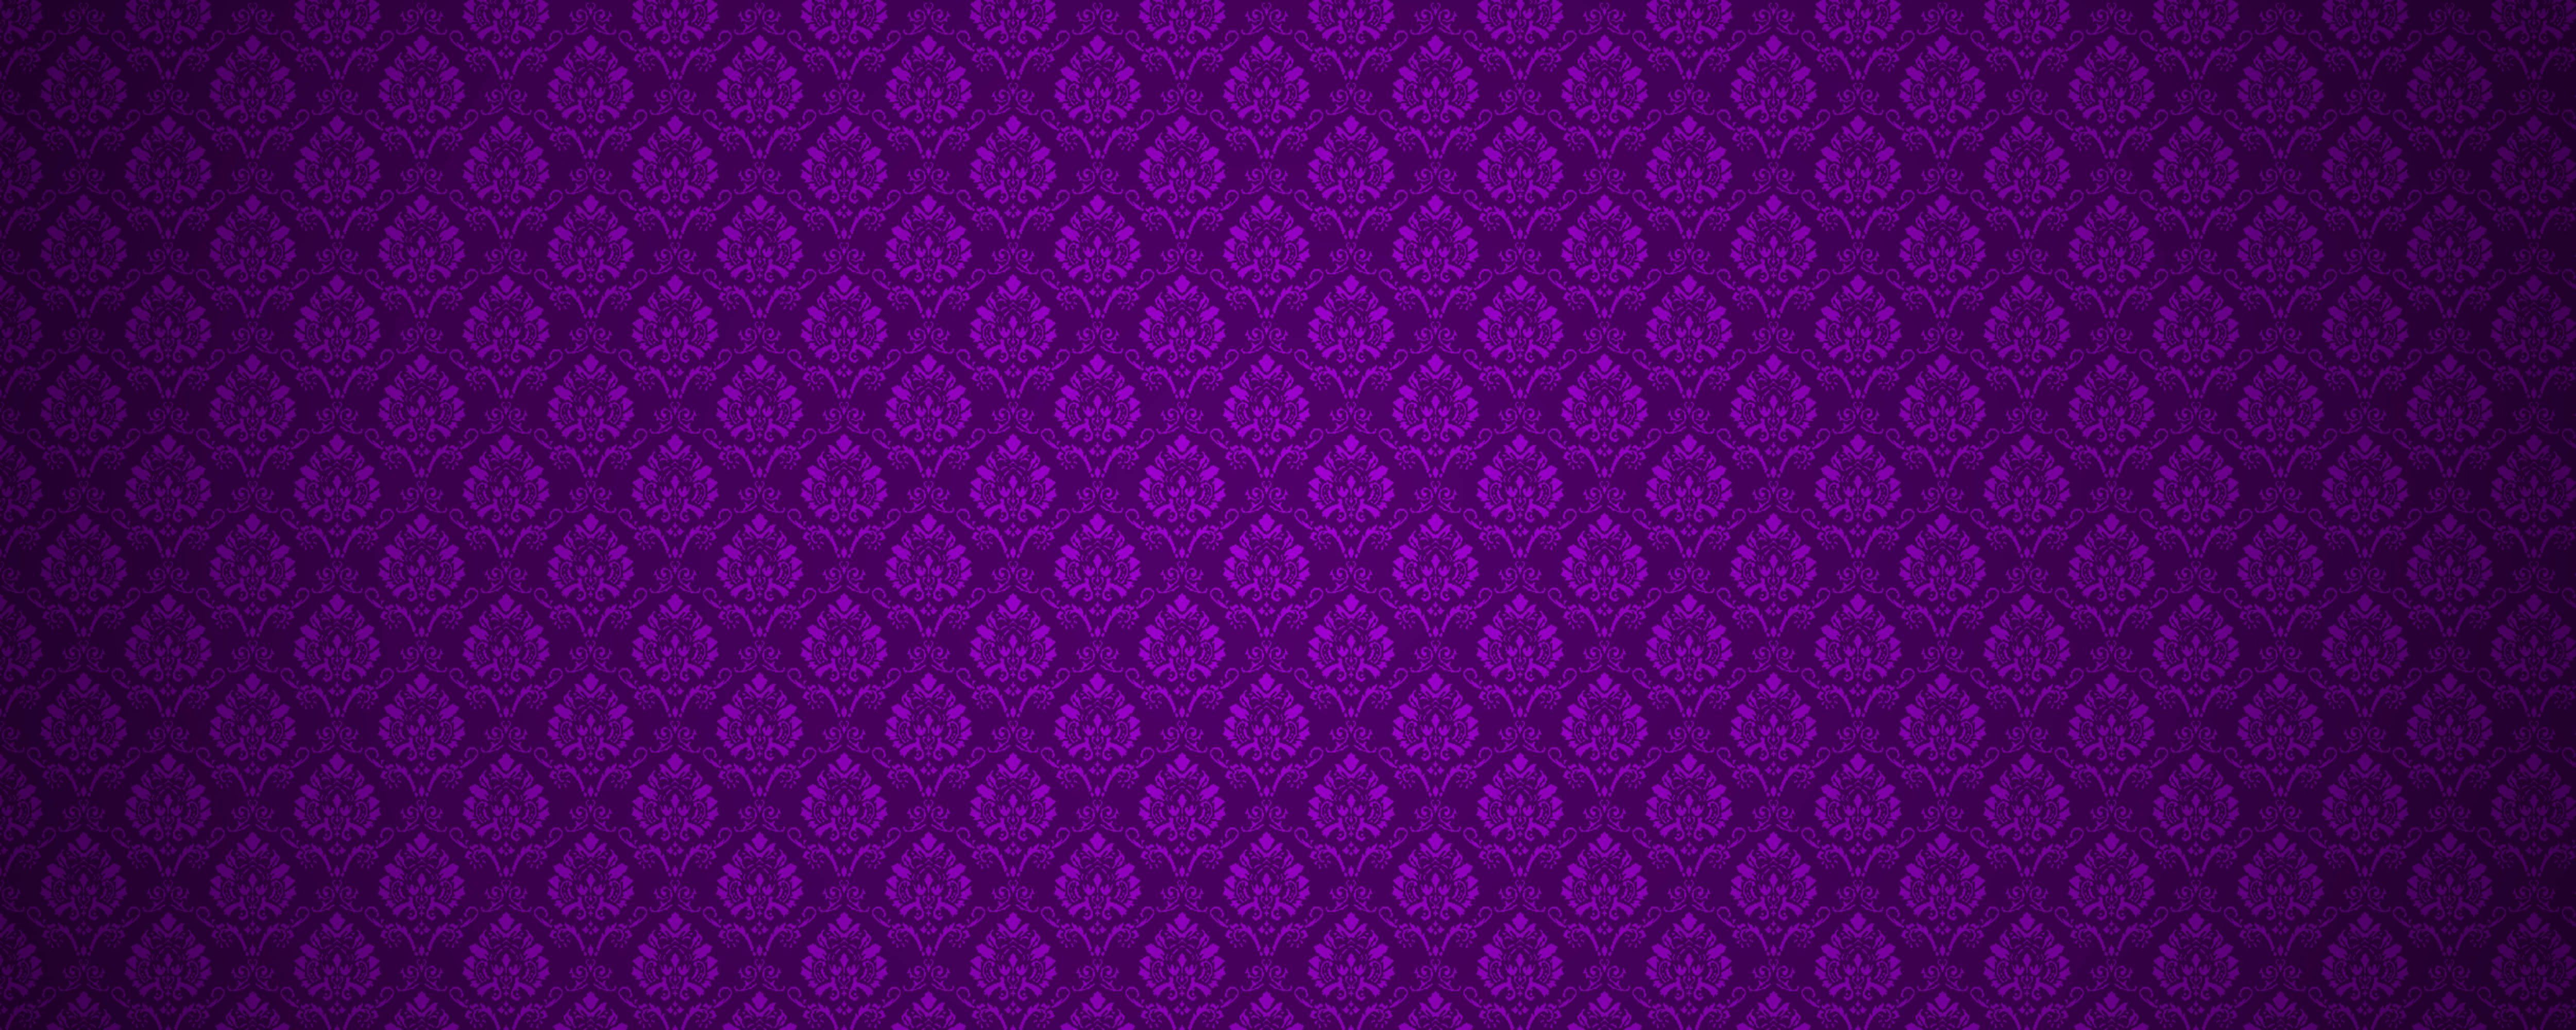 Wallpaper Purple